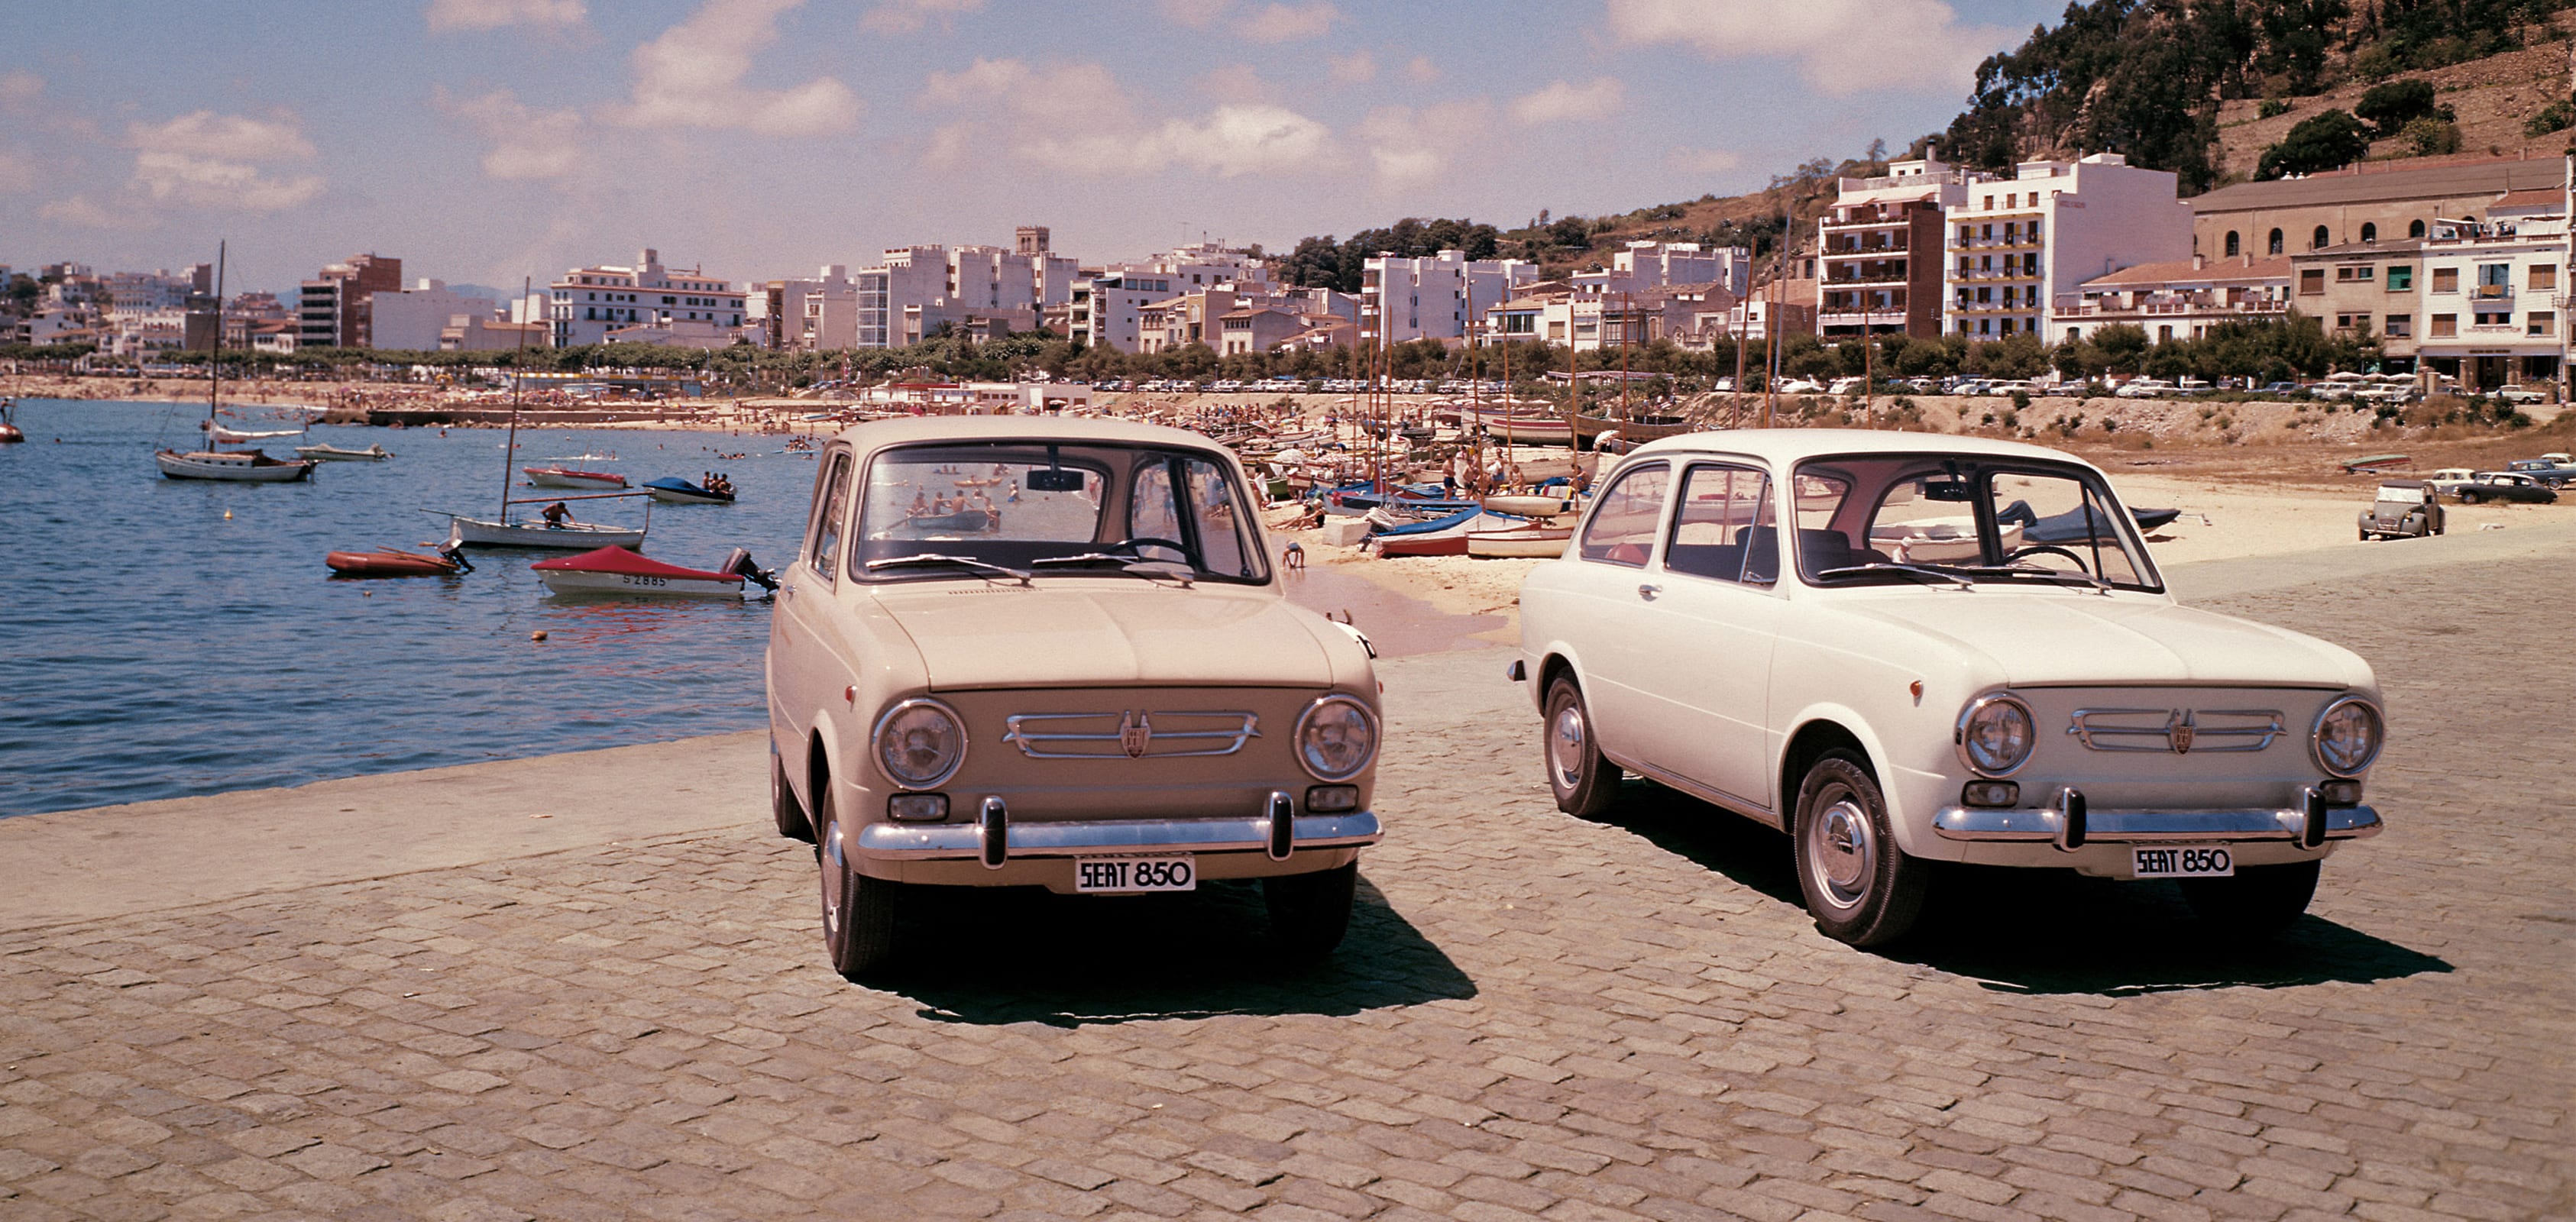 SEAT Historia de la marca Exportaciones de 1960 - SEAT 850 autos en una imagen de cabecera de playa